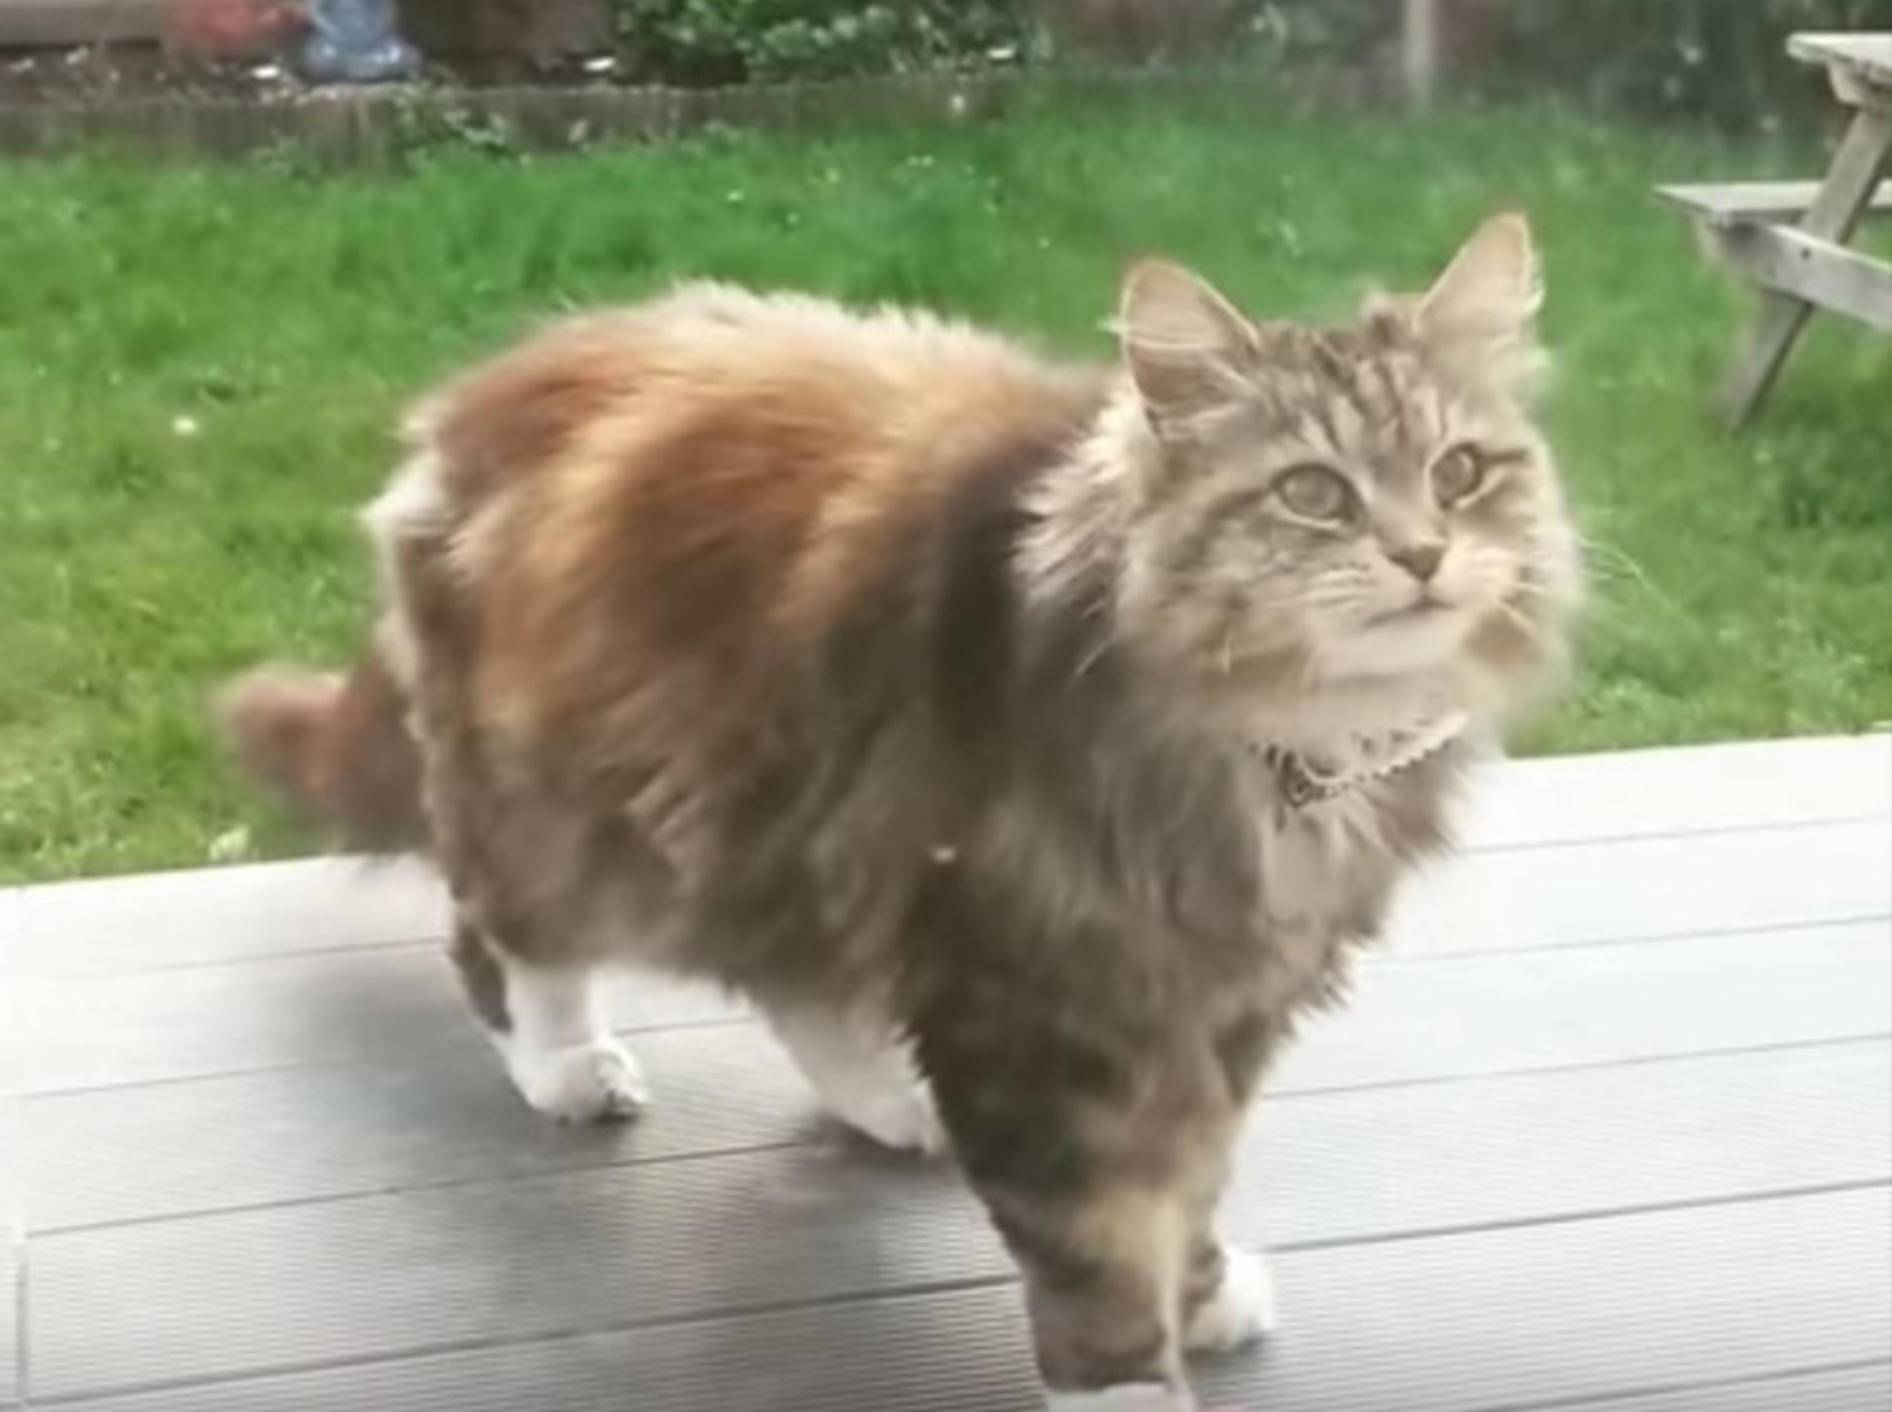 Katze Willow versorgt ihre Nachbarin täglich mit Blüten - Bild: YouTube / Love Meow